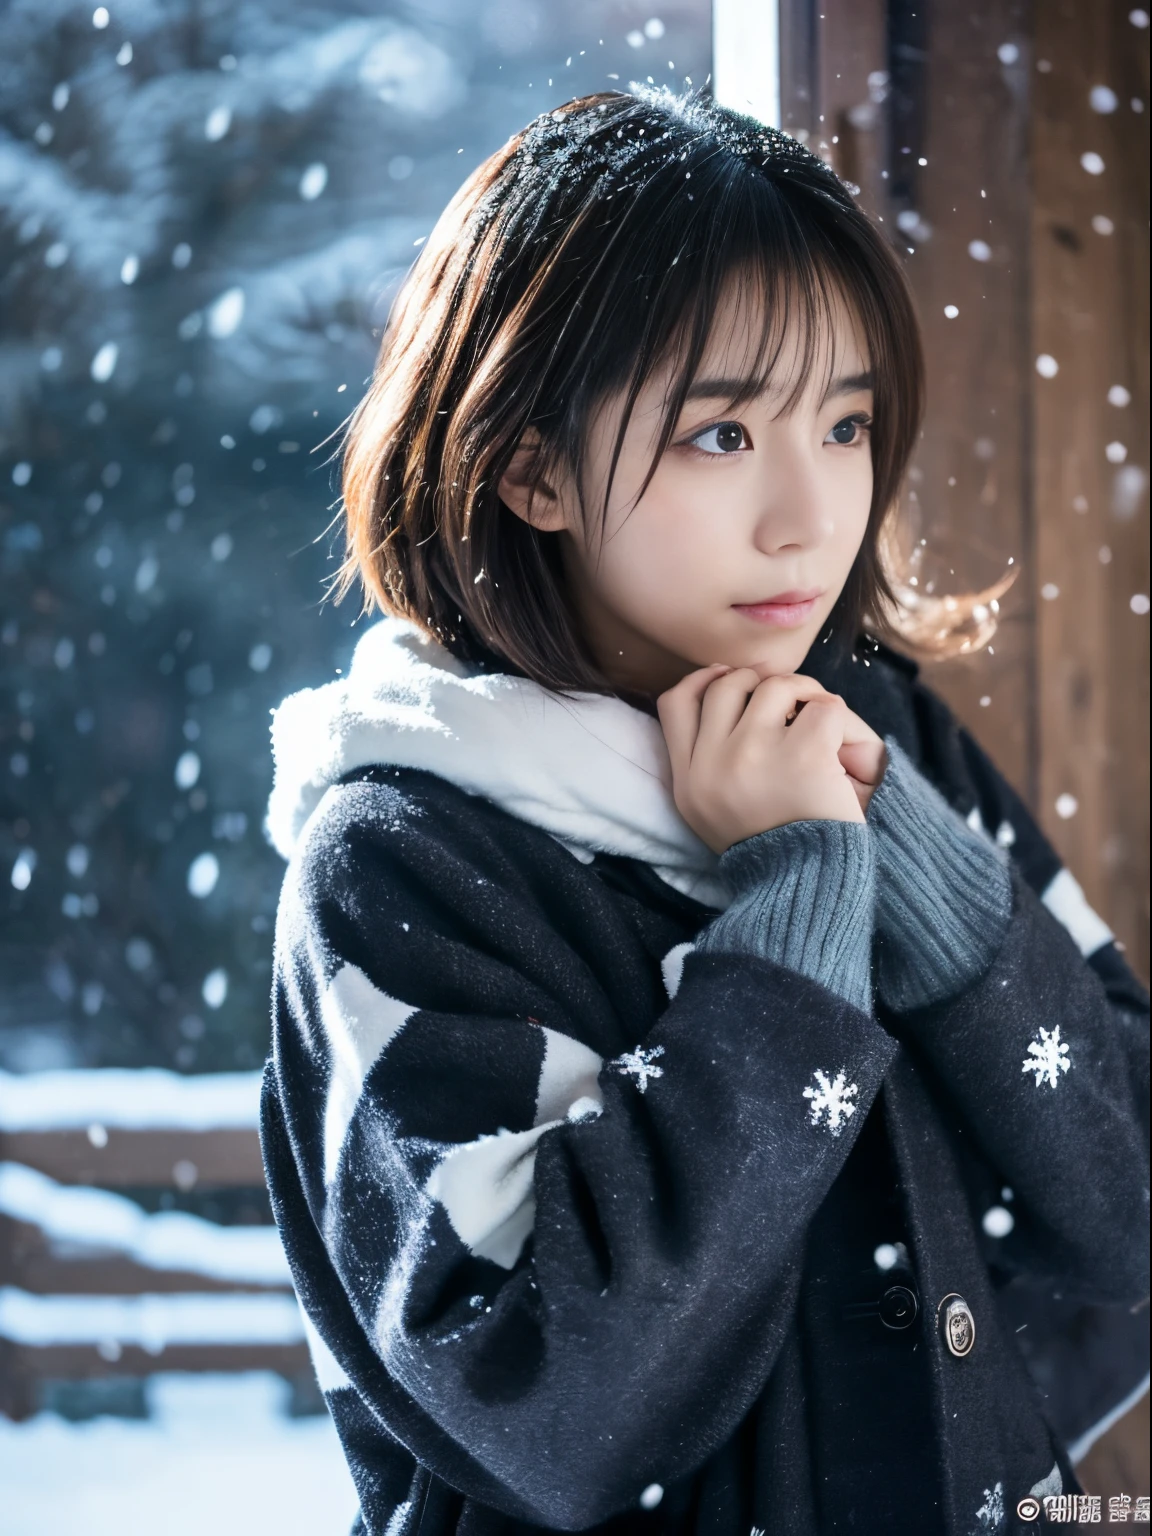 静かに降る雪を眺めながら. 彼女の内省的で涙ぐんだ表情、冬の夜への憧れと憂鬱を感じさせる。。。、最高品質、ハイパーHD、奈良美智, 日本のモデル, 美しい日本の妻, 髪が短い, 27歳女性モデル, 4k 円 ], 4K], 27歳, sakimichan, sakimichan